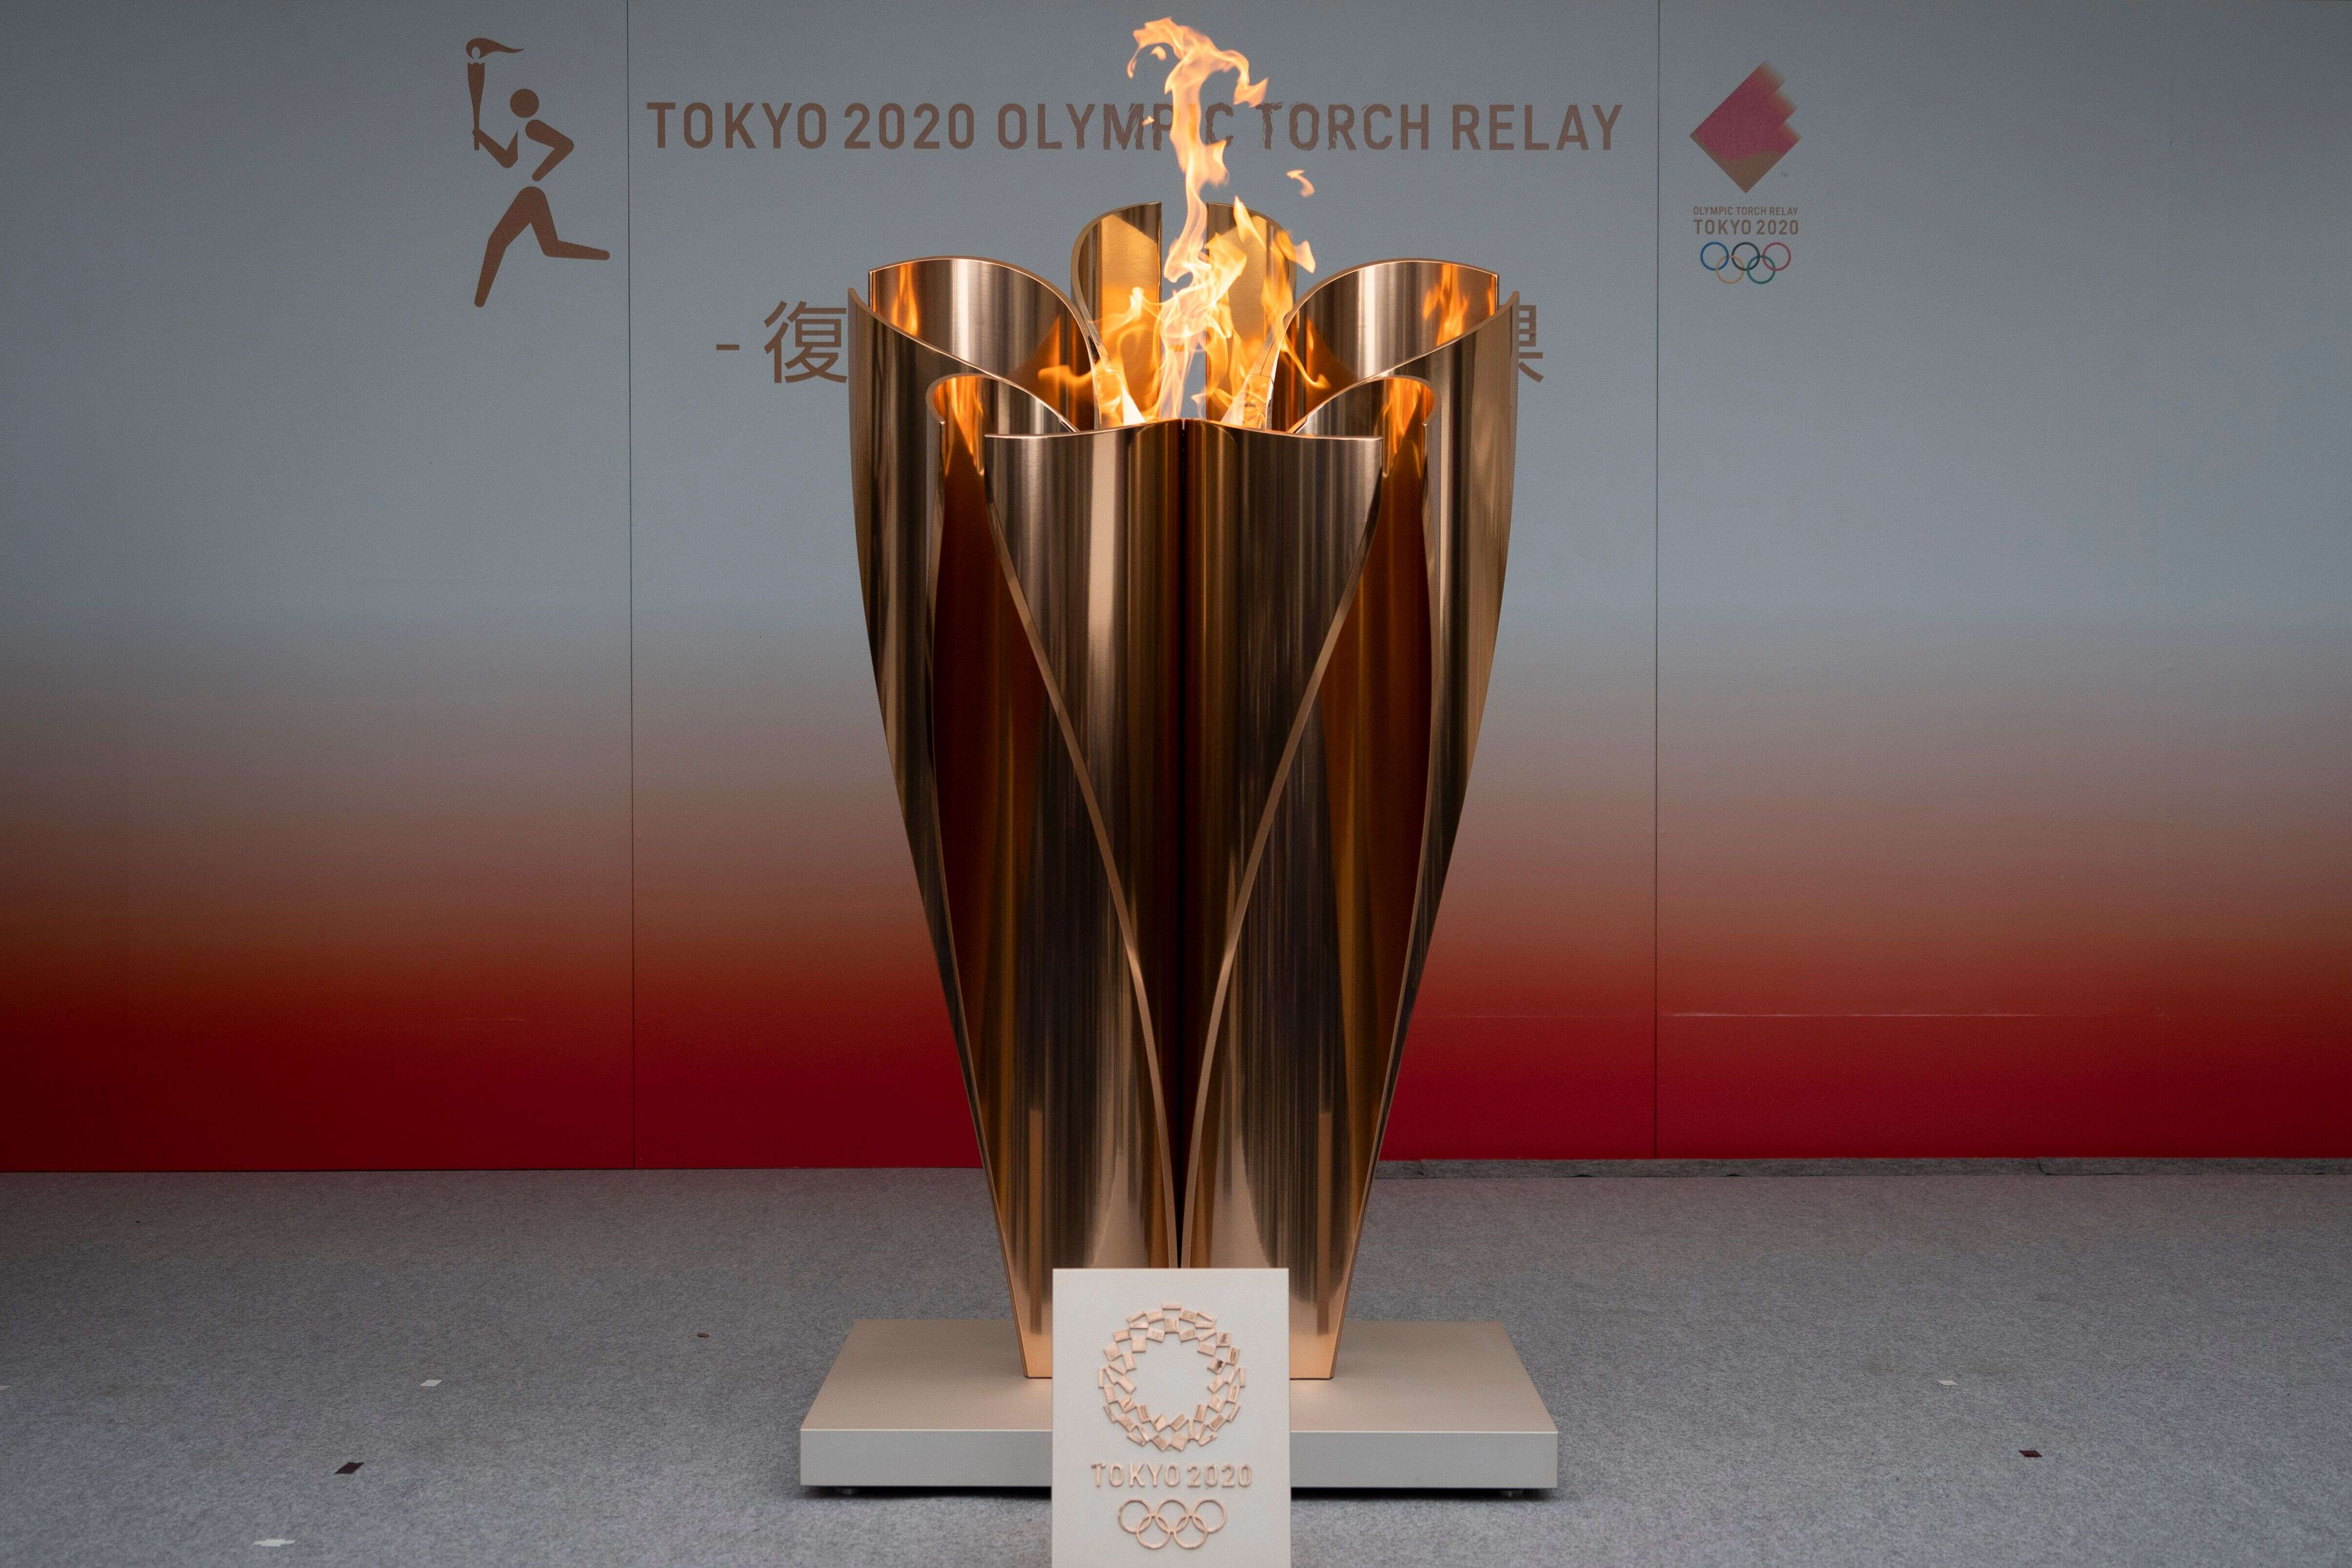 La flamme olympique des JO de Tokyo exposée lors d'une cérémonie publique dans la ville de Fukushima, au Japon, le 24 mars 2020.